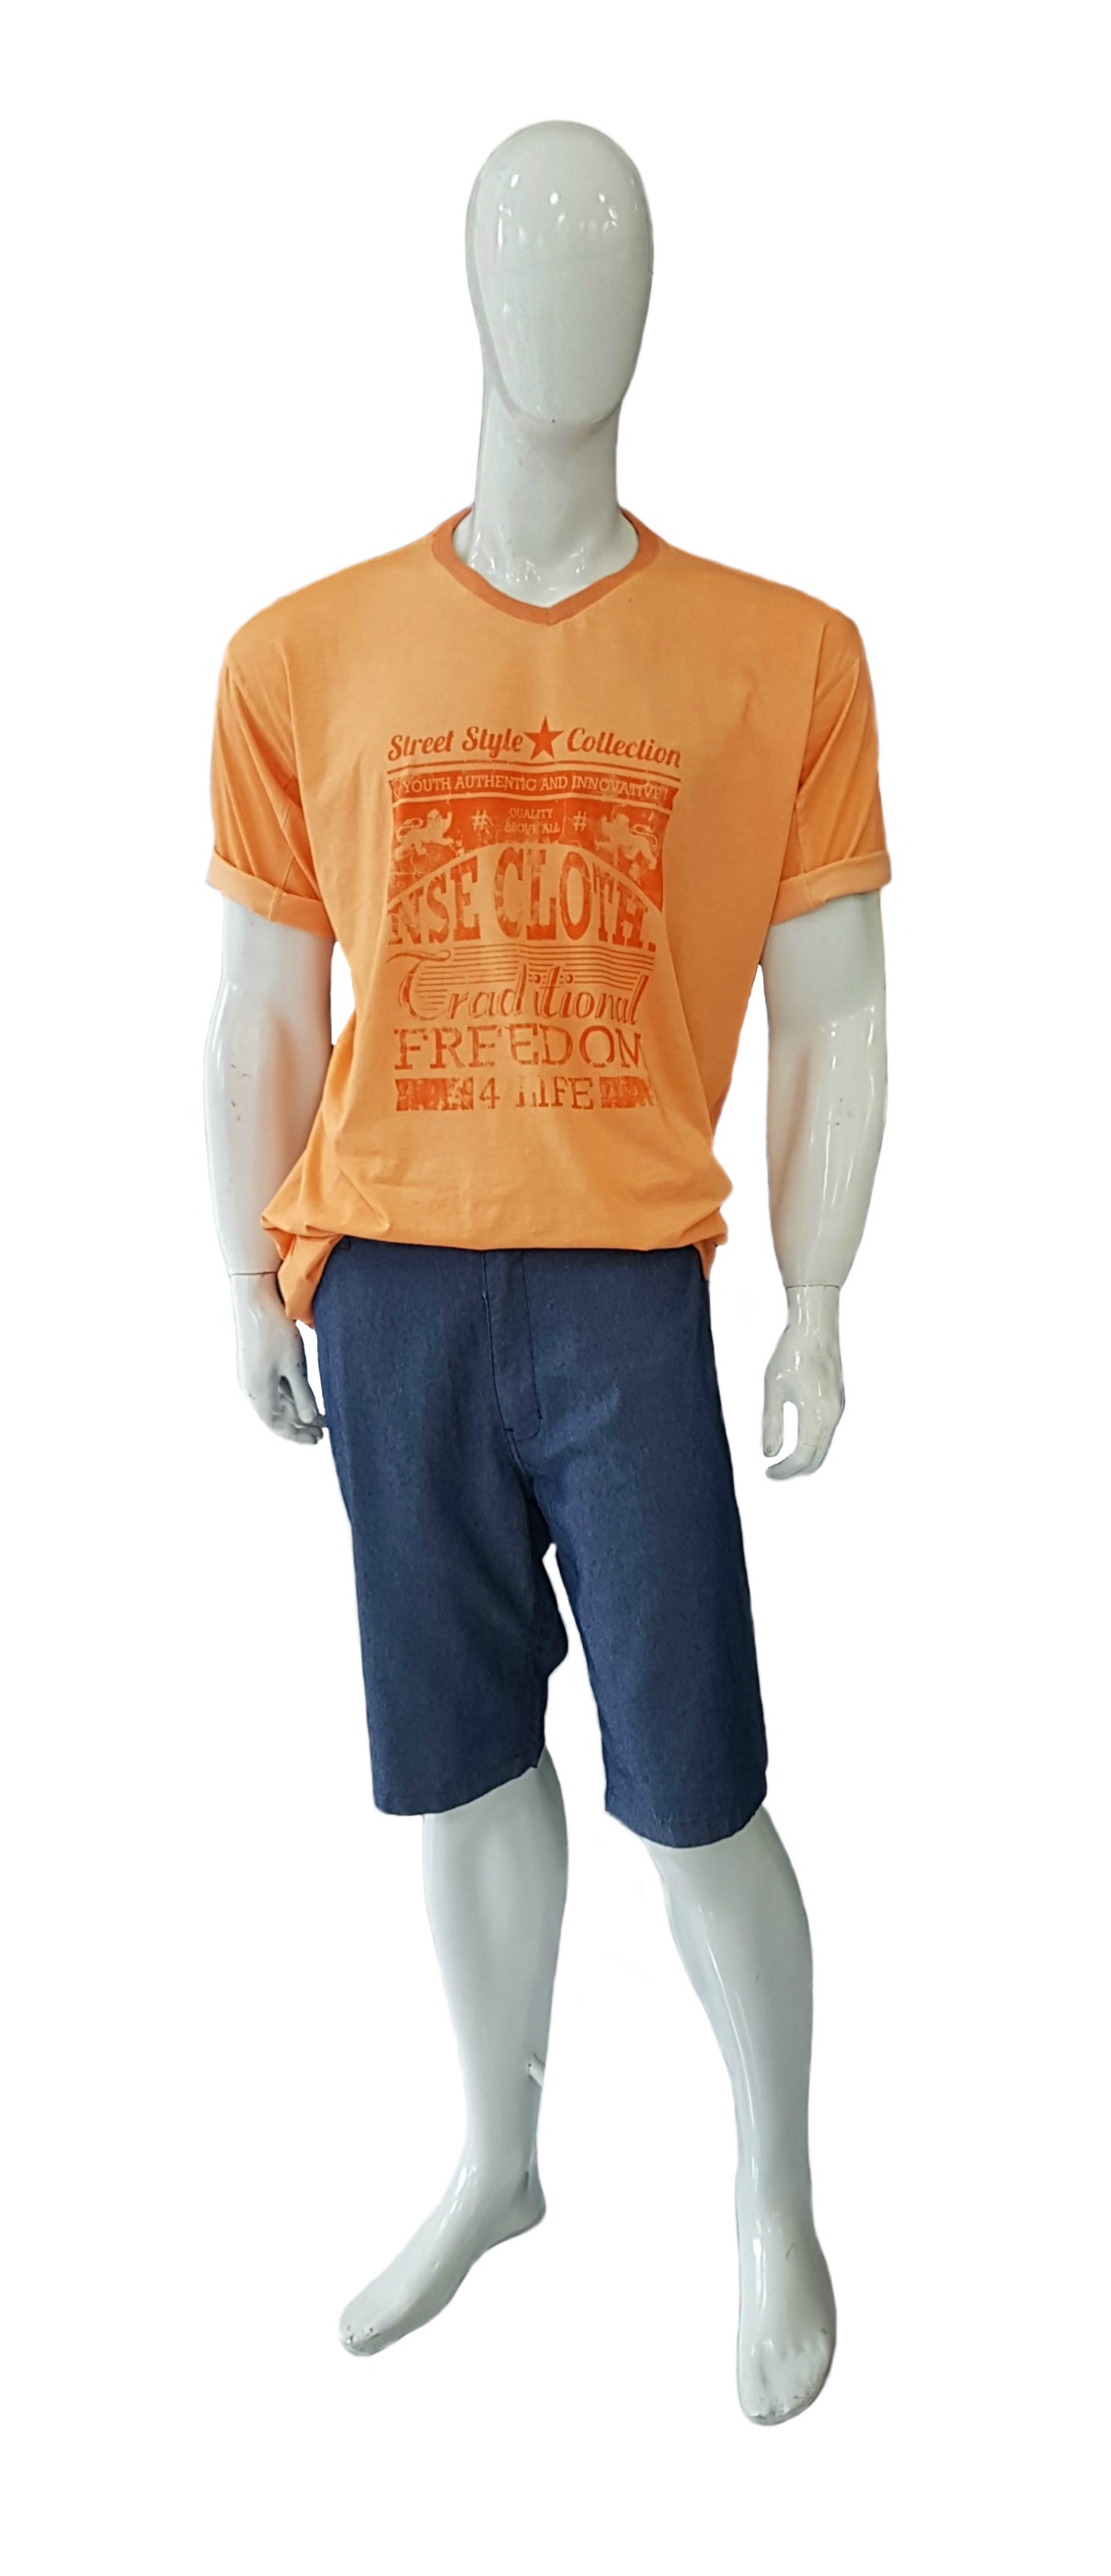 Camiseta Plus Size Stonada Ref 02088 / Bermuda Plus Size Jeans Ref 03068